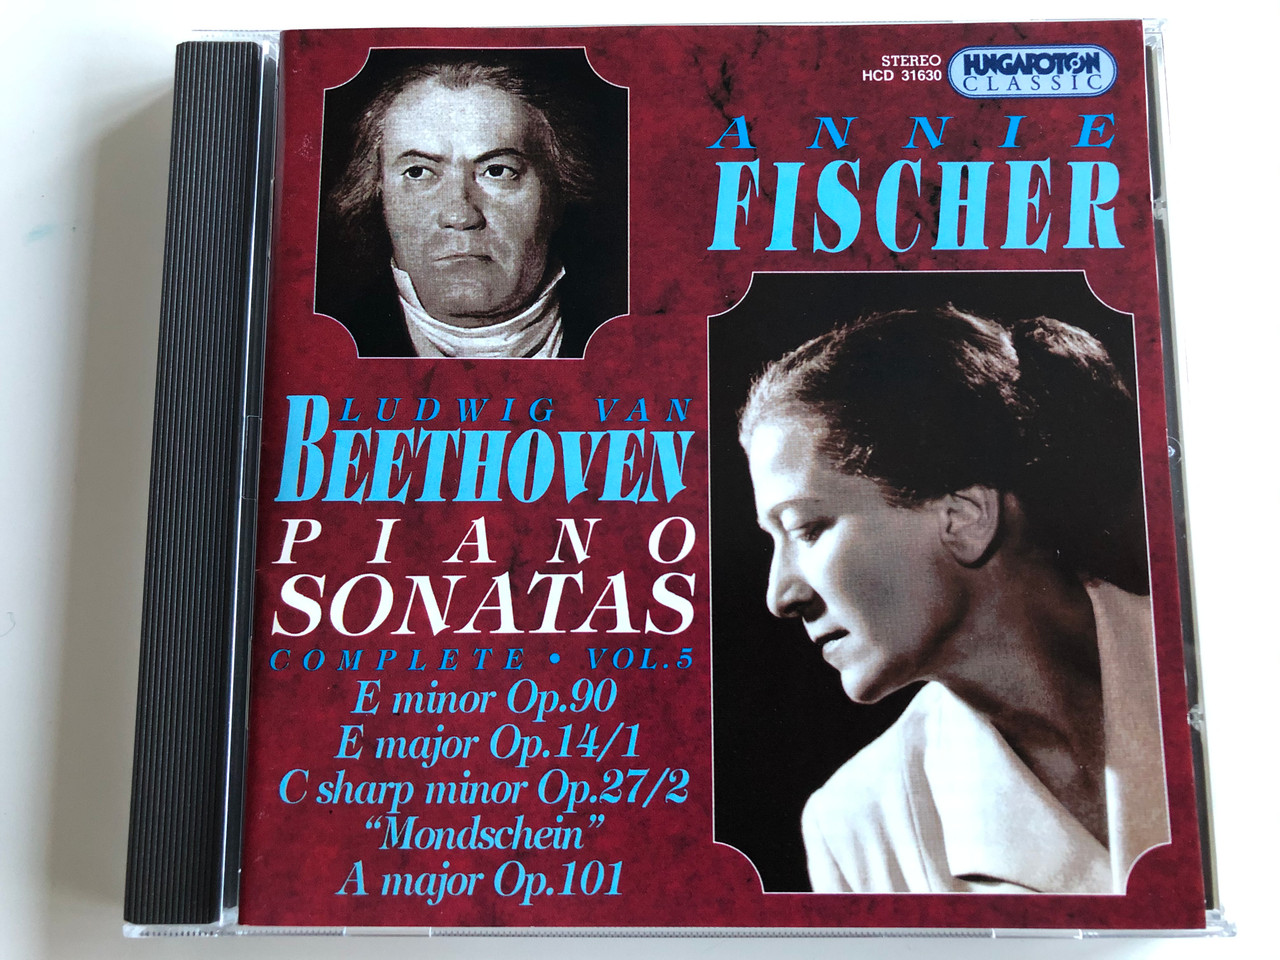 Annie Fischer - Ludwig van Beethoven - Piano Sonatas / Complete, Vol. 5: E  Minor Op. 90, E Major Op. 14/1, C Sharp Minor Op. 27/2 "Mondschein", A  Major Op.101 / Hungaroton Classic Audio CD 1997 Stereo / HCD 31630 -  bibleinmylanguage